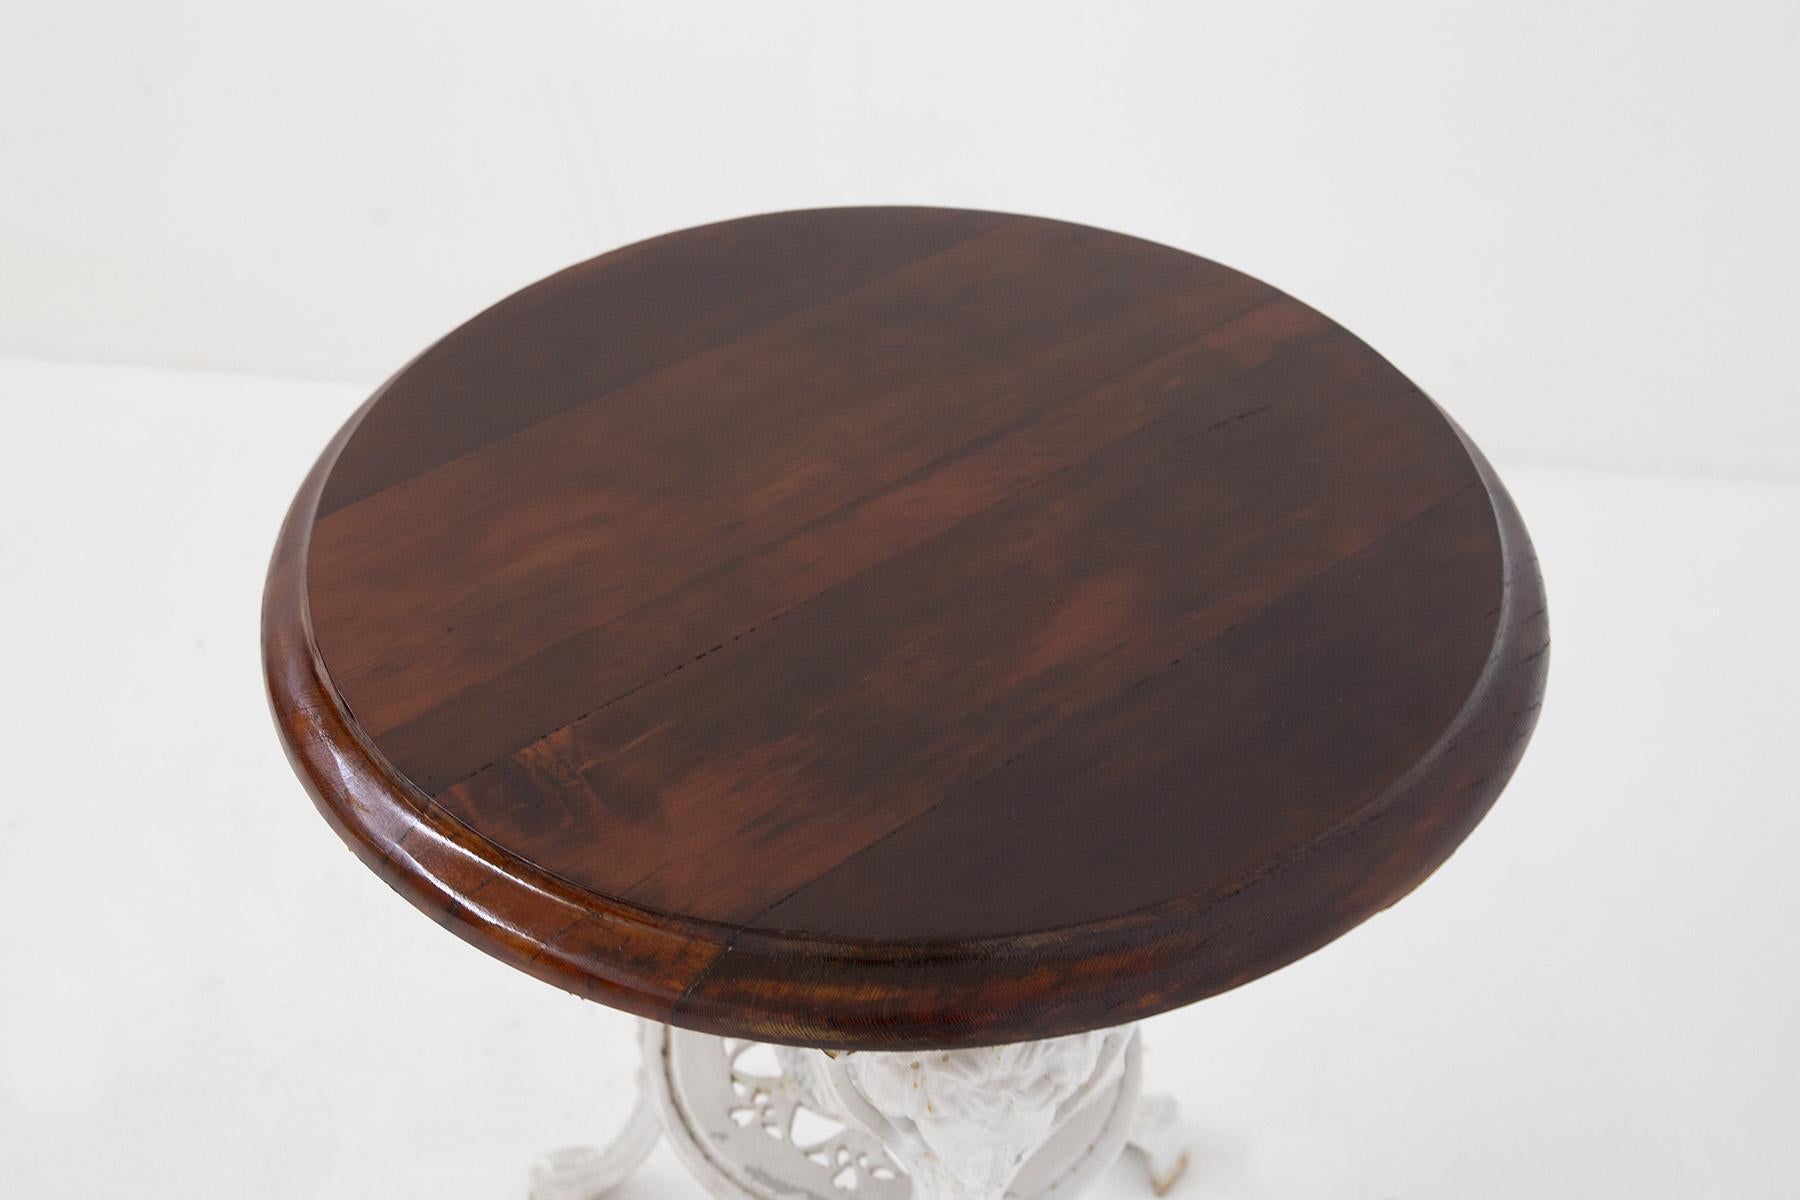 Rare table basse vintage victorienne en fonte fabriquée à la fin des années 1800, belle fabrication anglaise.
La table basse est petite et est destinée à un usage de jardin, comme le montrent clairement les matériaux.
La structure porteuse est